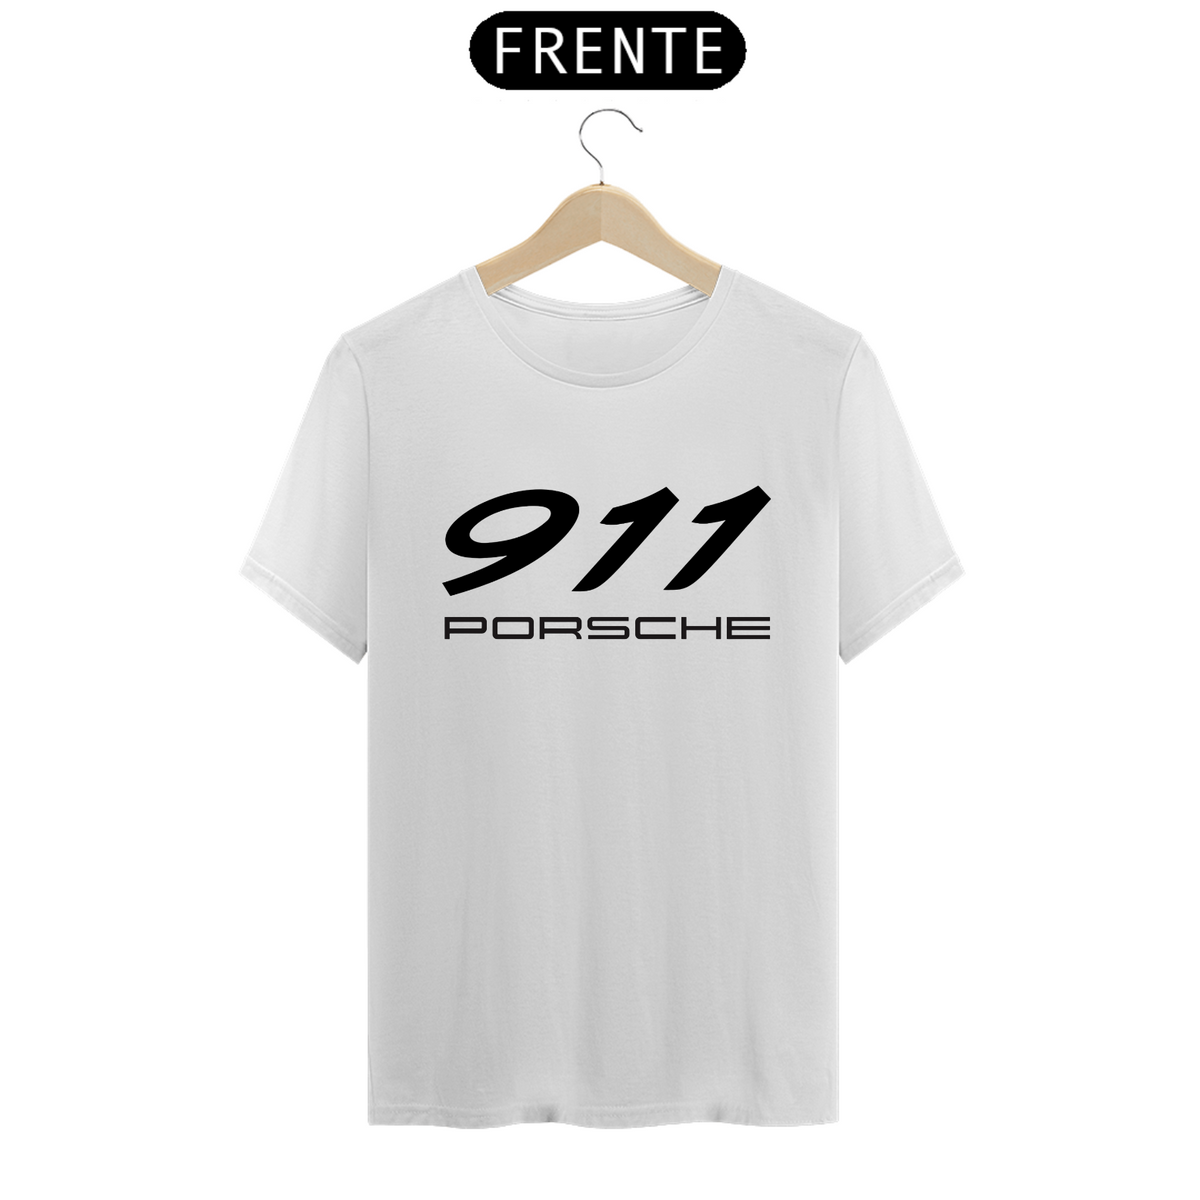 Nome do produto: Camiseta Porsche 911